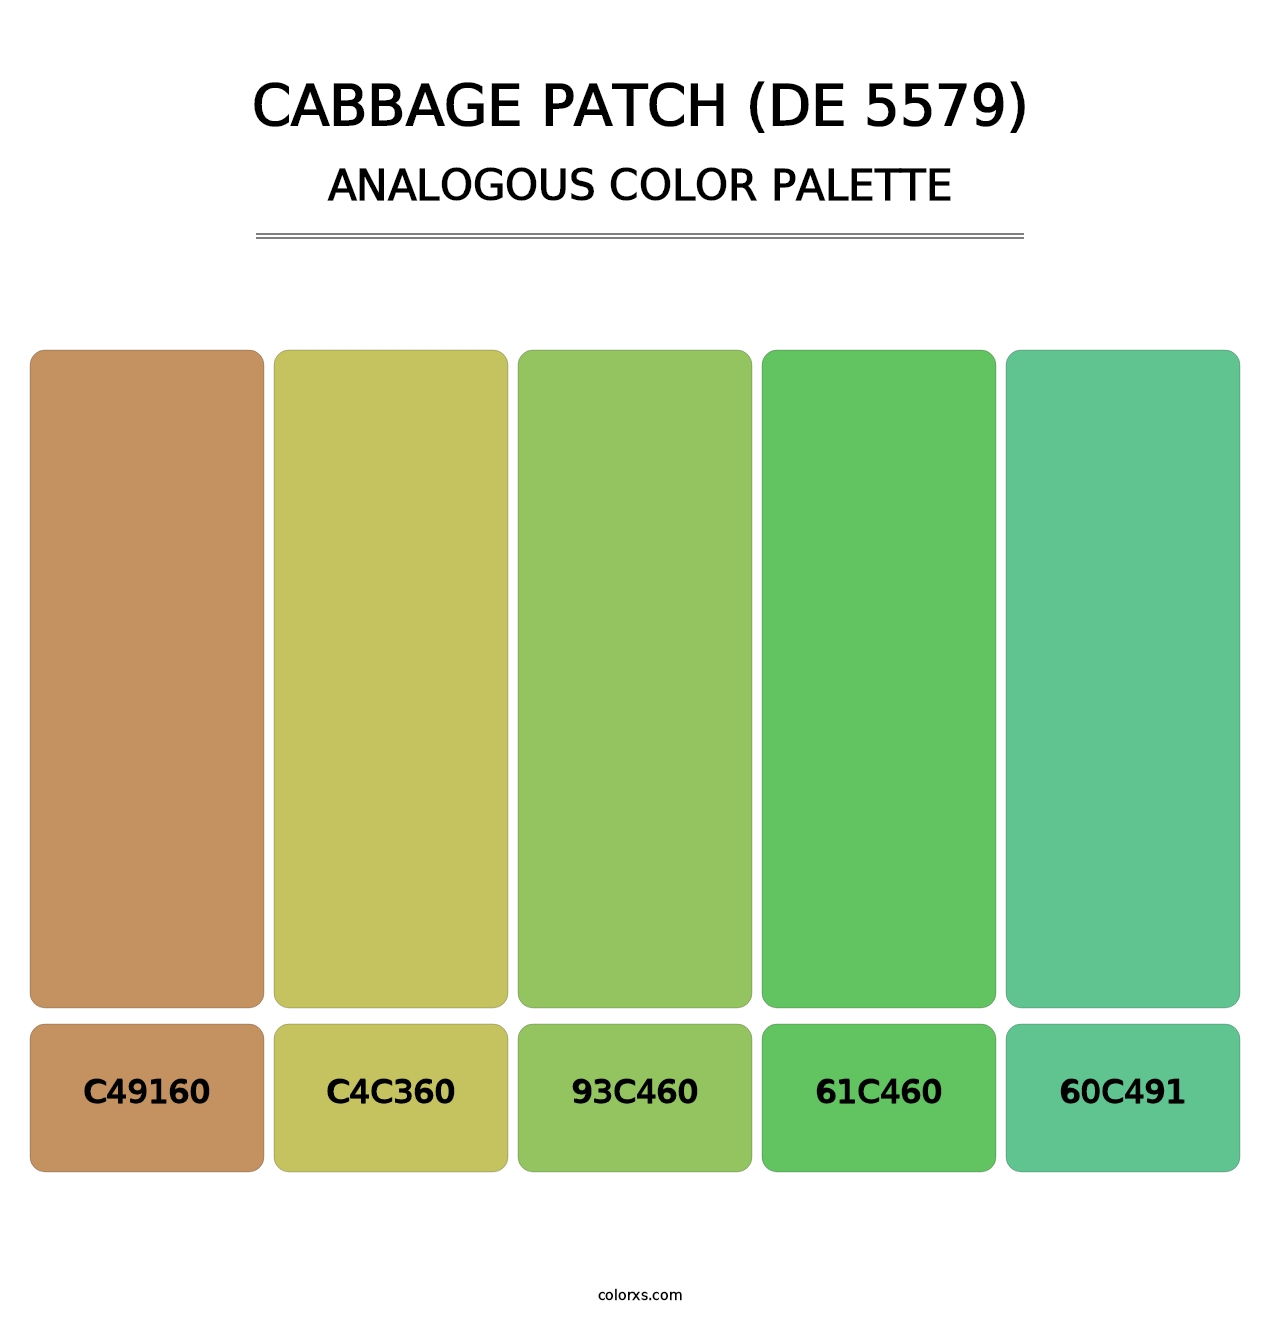 Cabbage Patch (DE 5579) - Analogous Color Palette